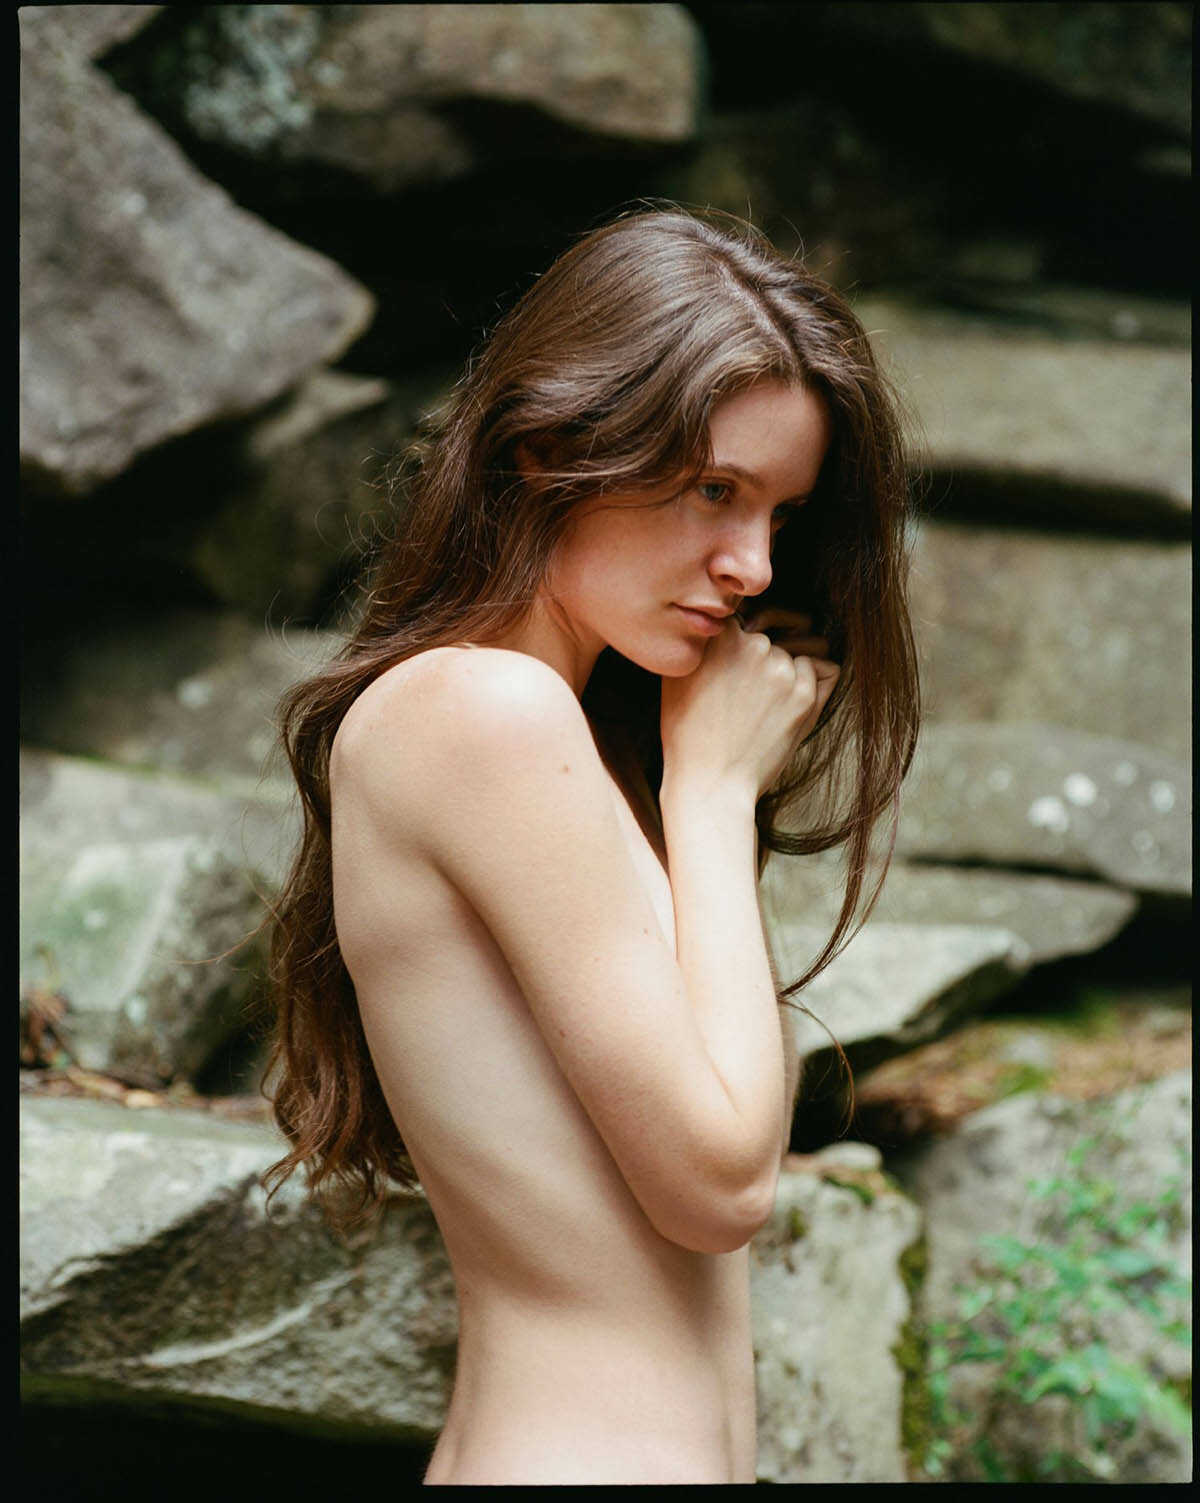 Γυμνές φωτογραφίες στην φύση με το μοντέλο Ivanka